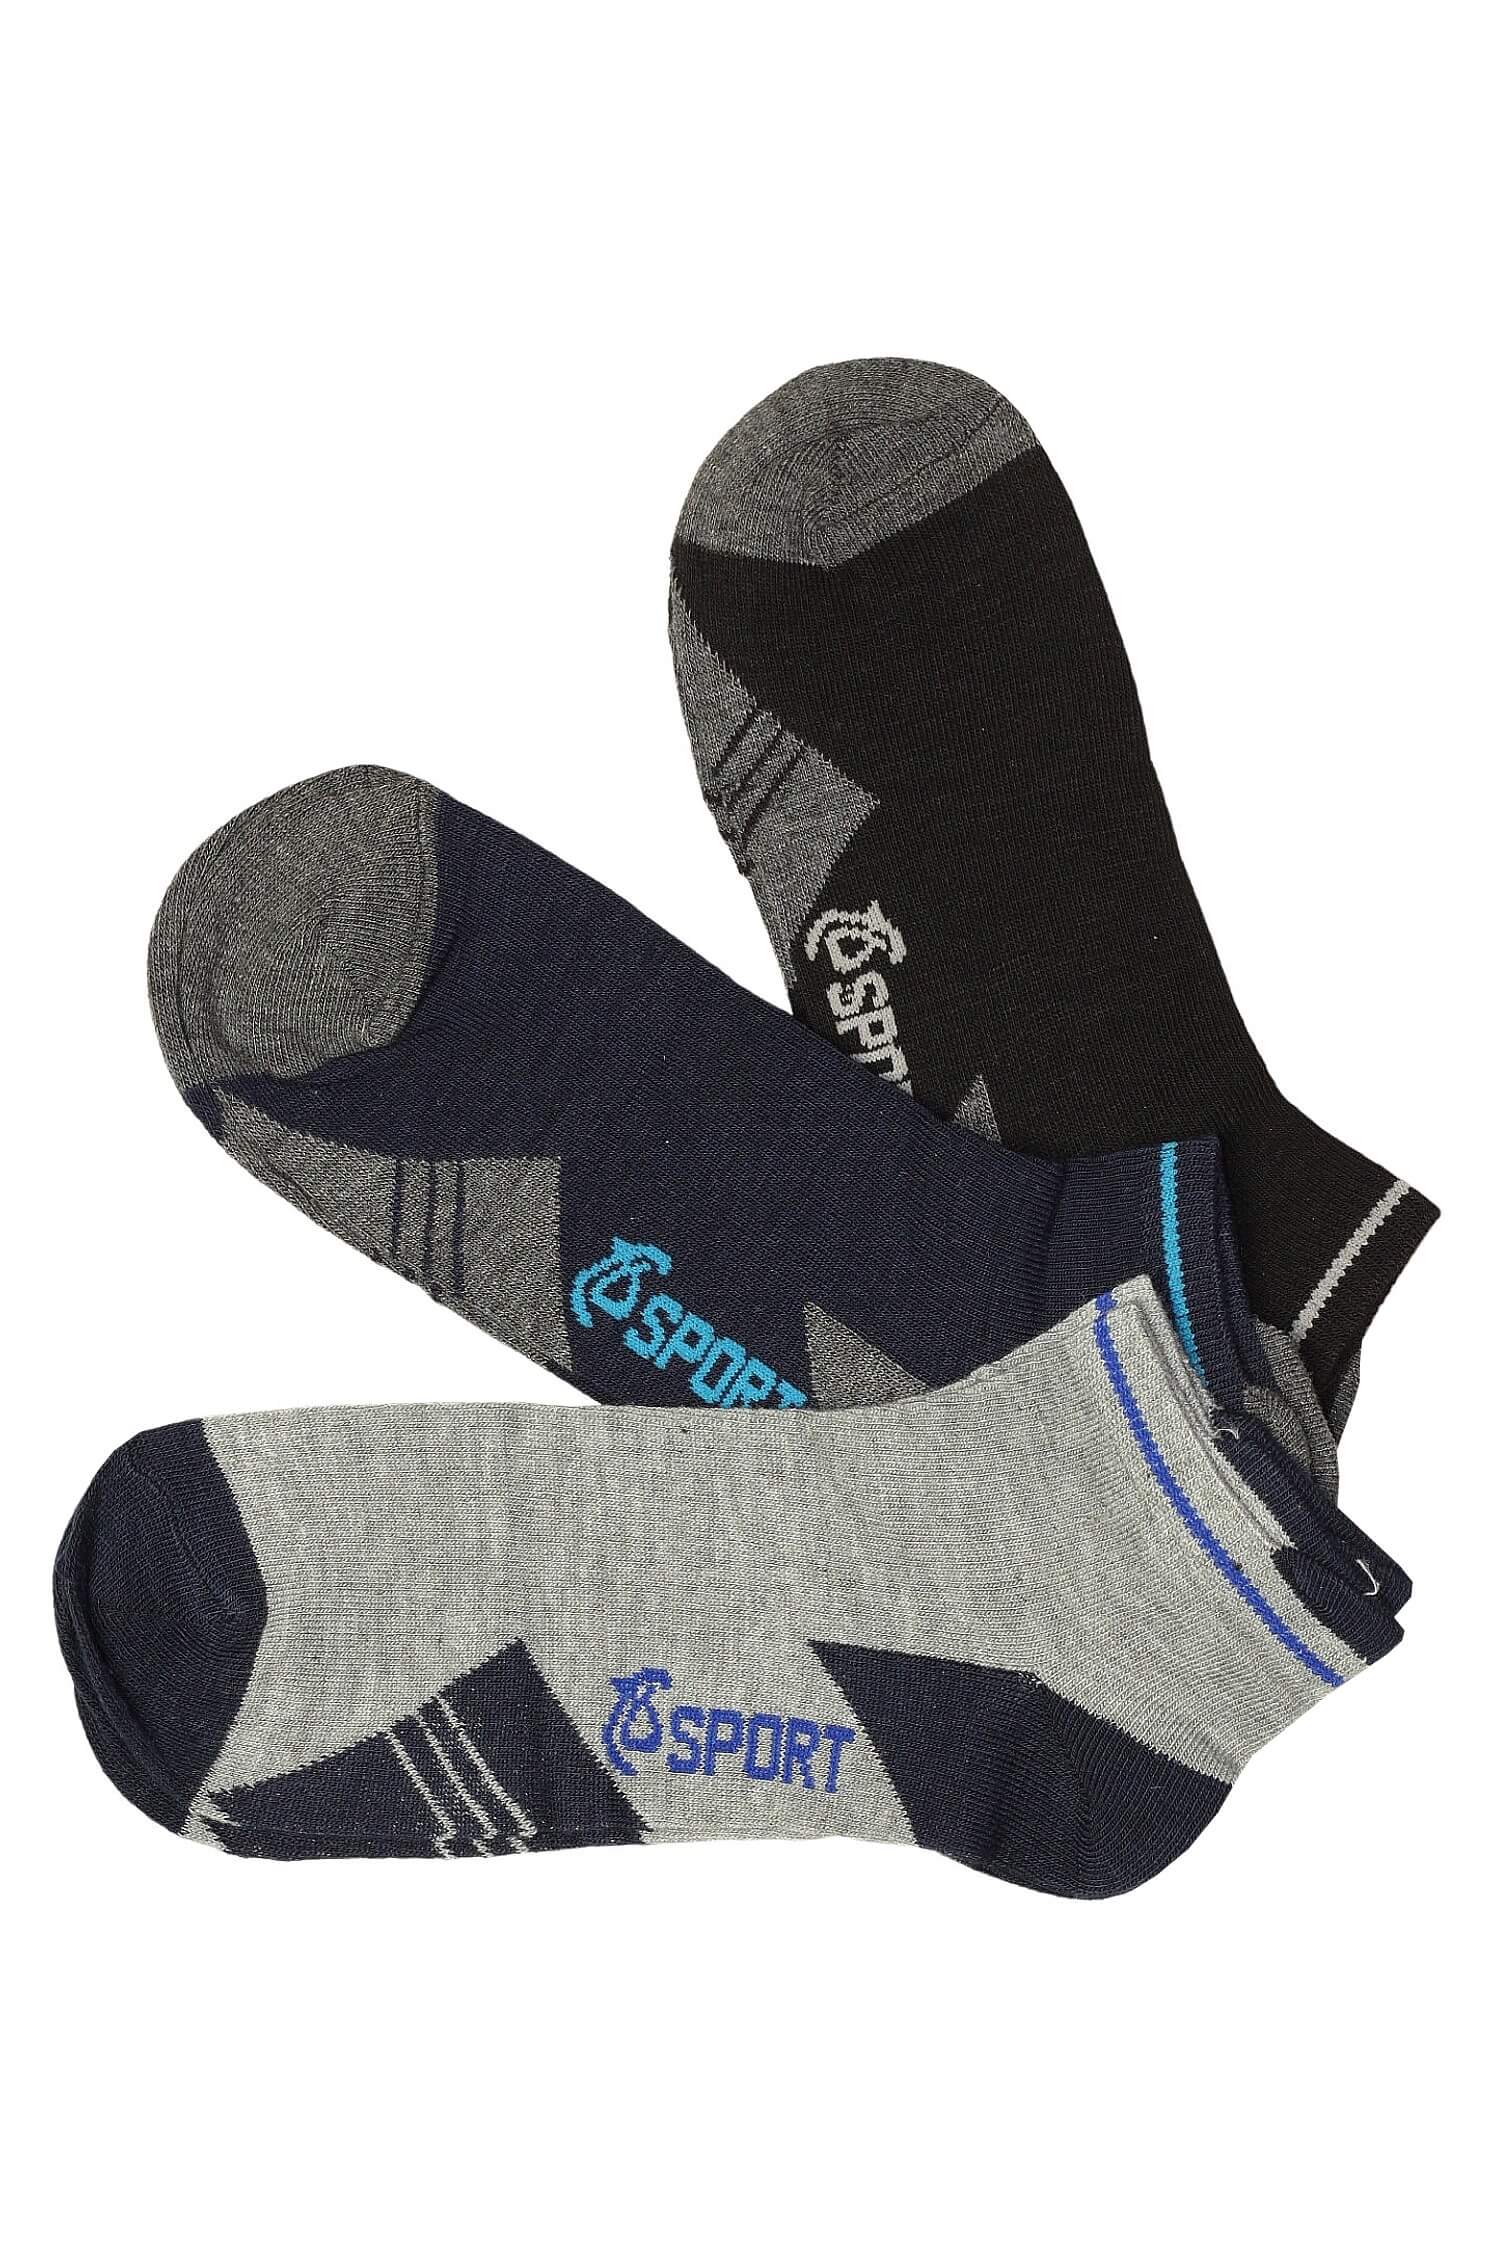 Nízké ponožky pro muže bavlněné PM5012 3 páry 44-47 vícebarevná